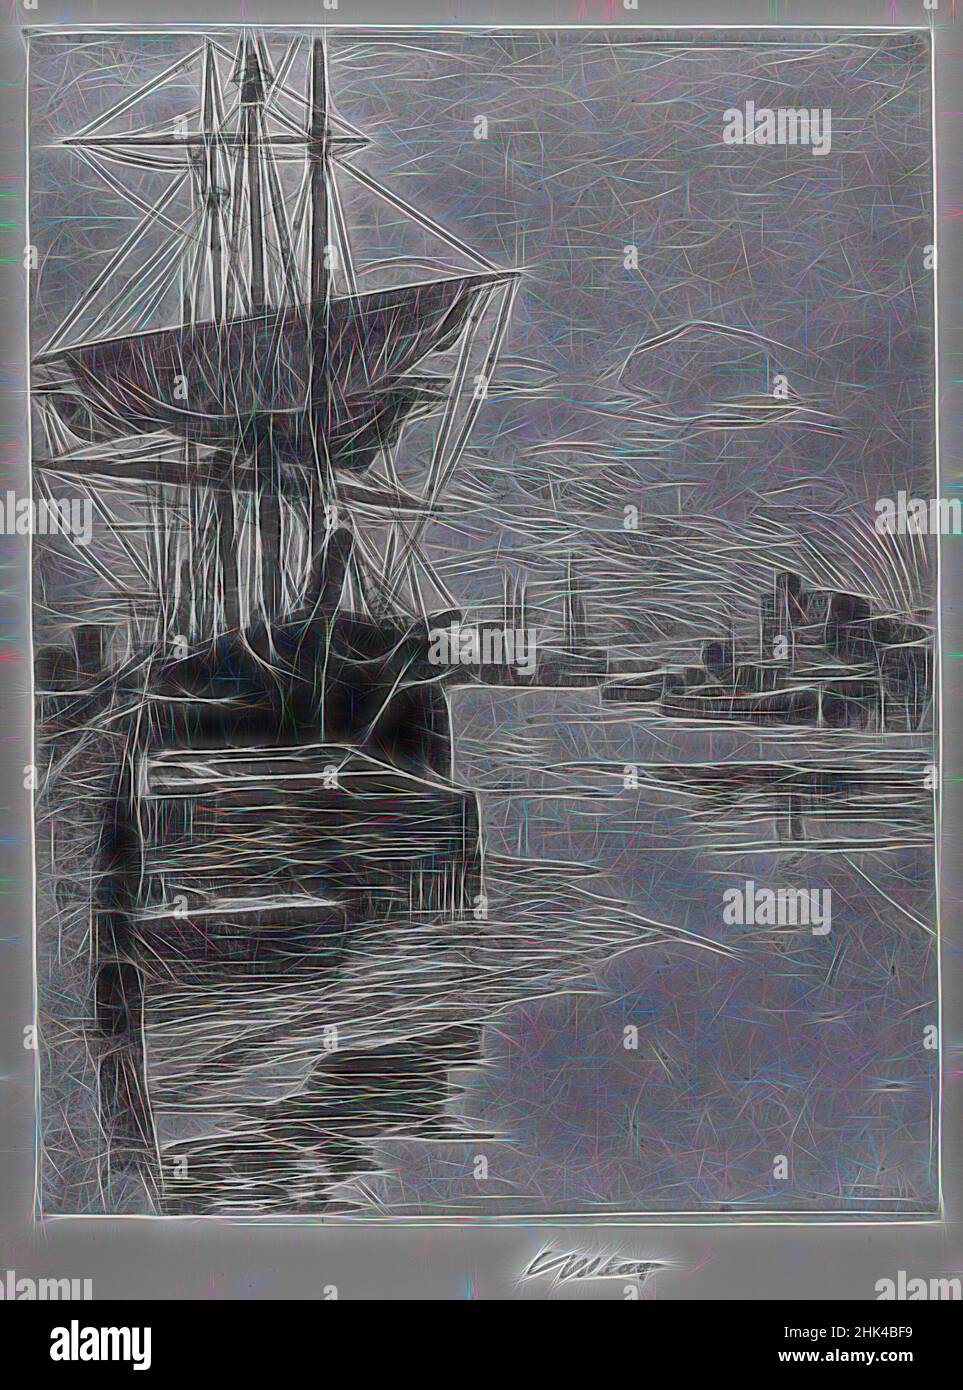 Inspirado en Atlantic Docks, Charles Adams Platt, norteamericano, 1861-1933, grabado sobre papel de paloma, 1888, Hoja: 20 1/2 x 15 3/8 pulg., 52,1 x 39,1 cm, Reimaginado por Artótop. Arte clásico reinventado con un toque moderno. Diseño de brillo cálido y alegre y luminosidad e radiación de rayos de luz. Fotografía inspirada en el surrealismo y el futurismo, que abarca la energía dinámica de la tecnología moderna, el movimiento, la velocidad y la revolución de la cultura Foto de stock